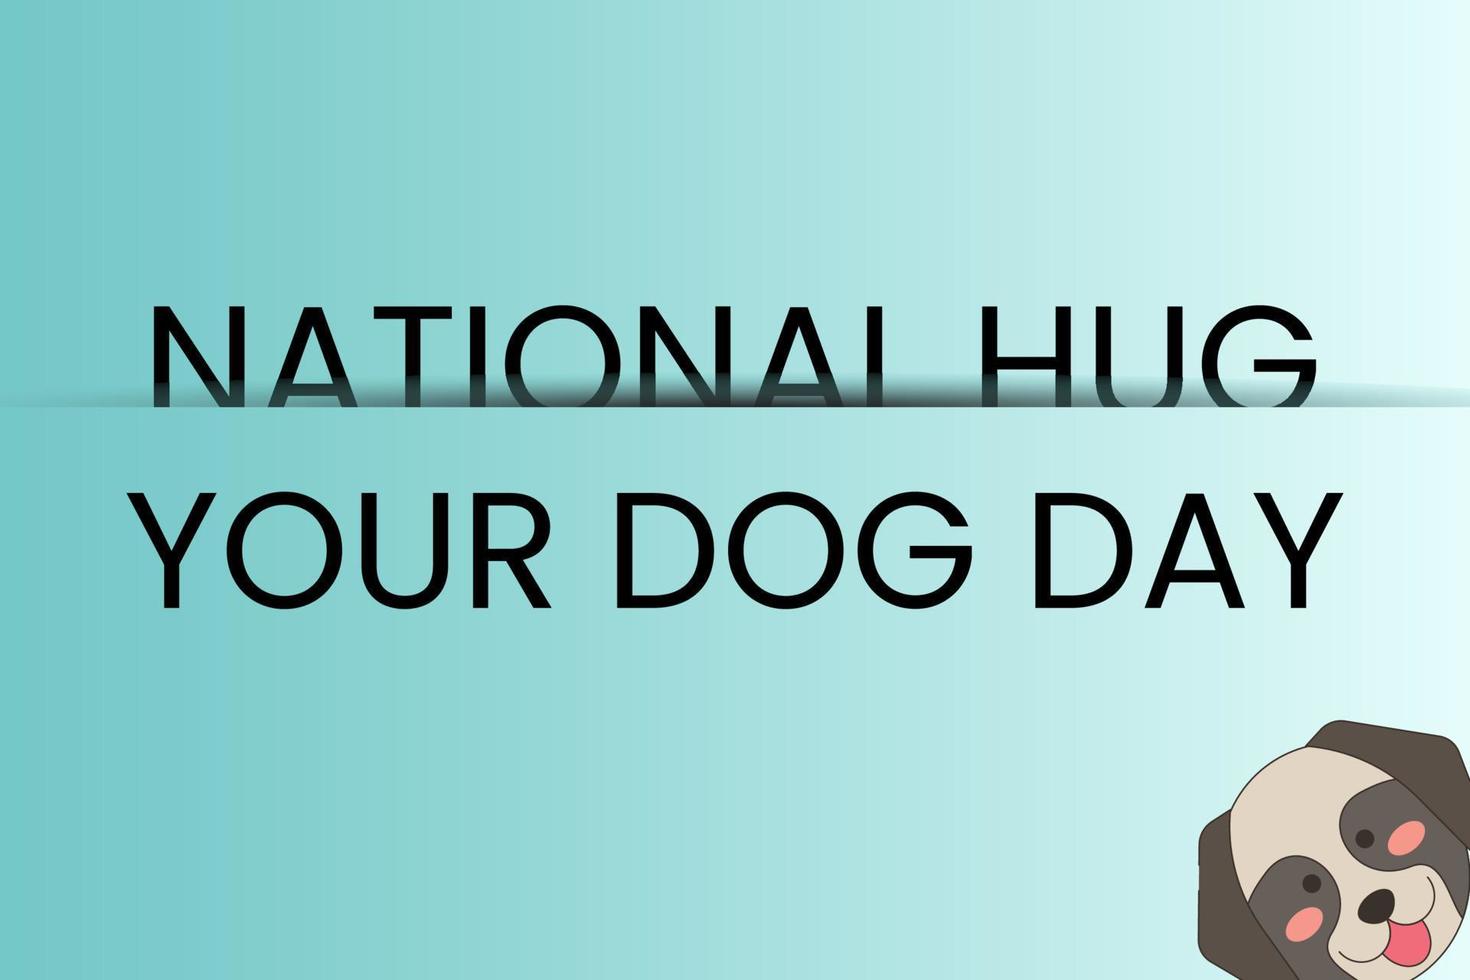 National Hug Your Dog Day vector illustration- April 10 - USA Holiday